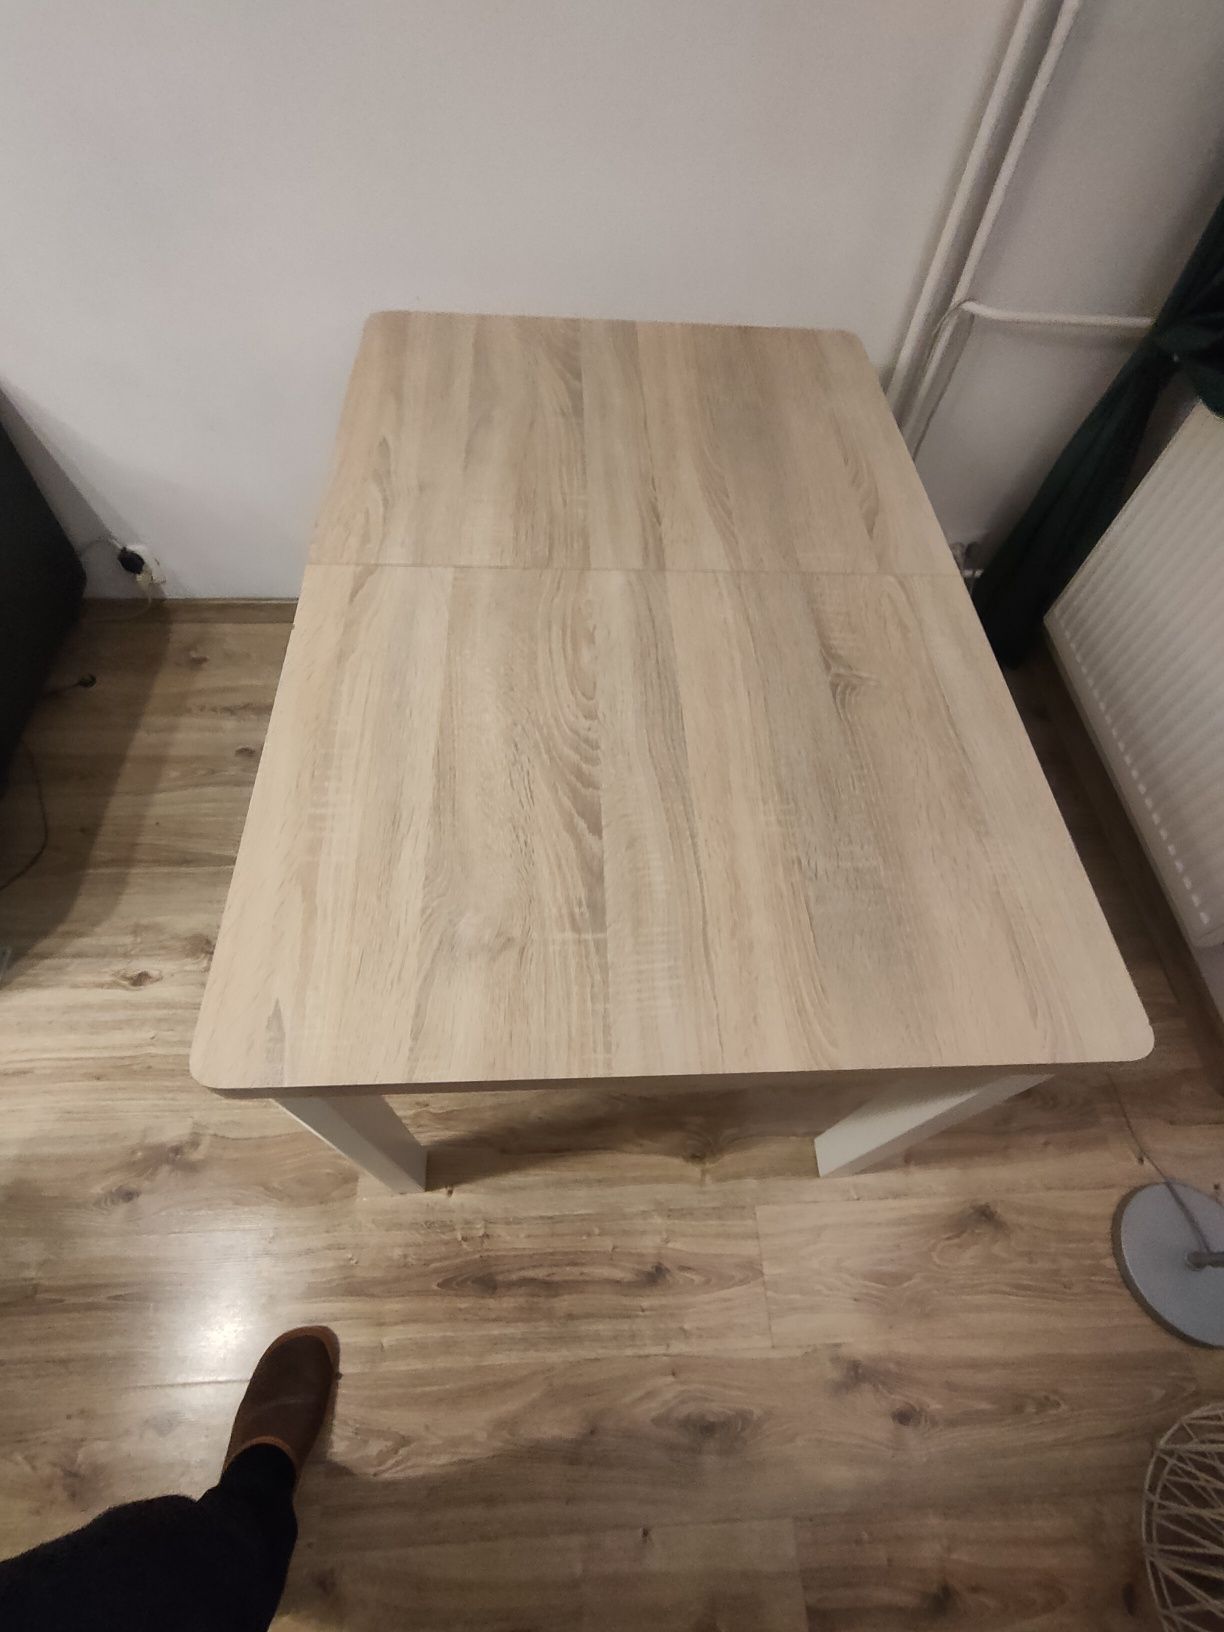 Stół rozkladany do salonu